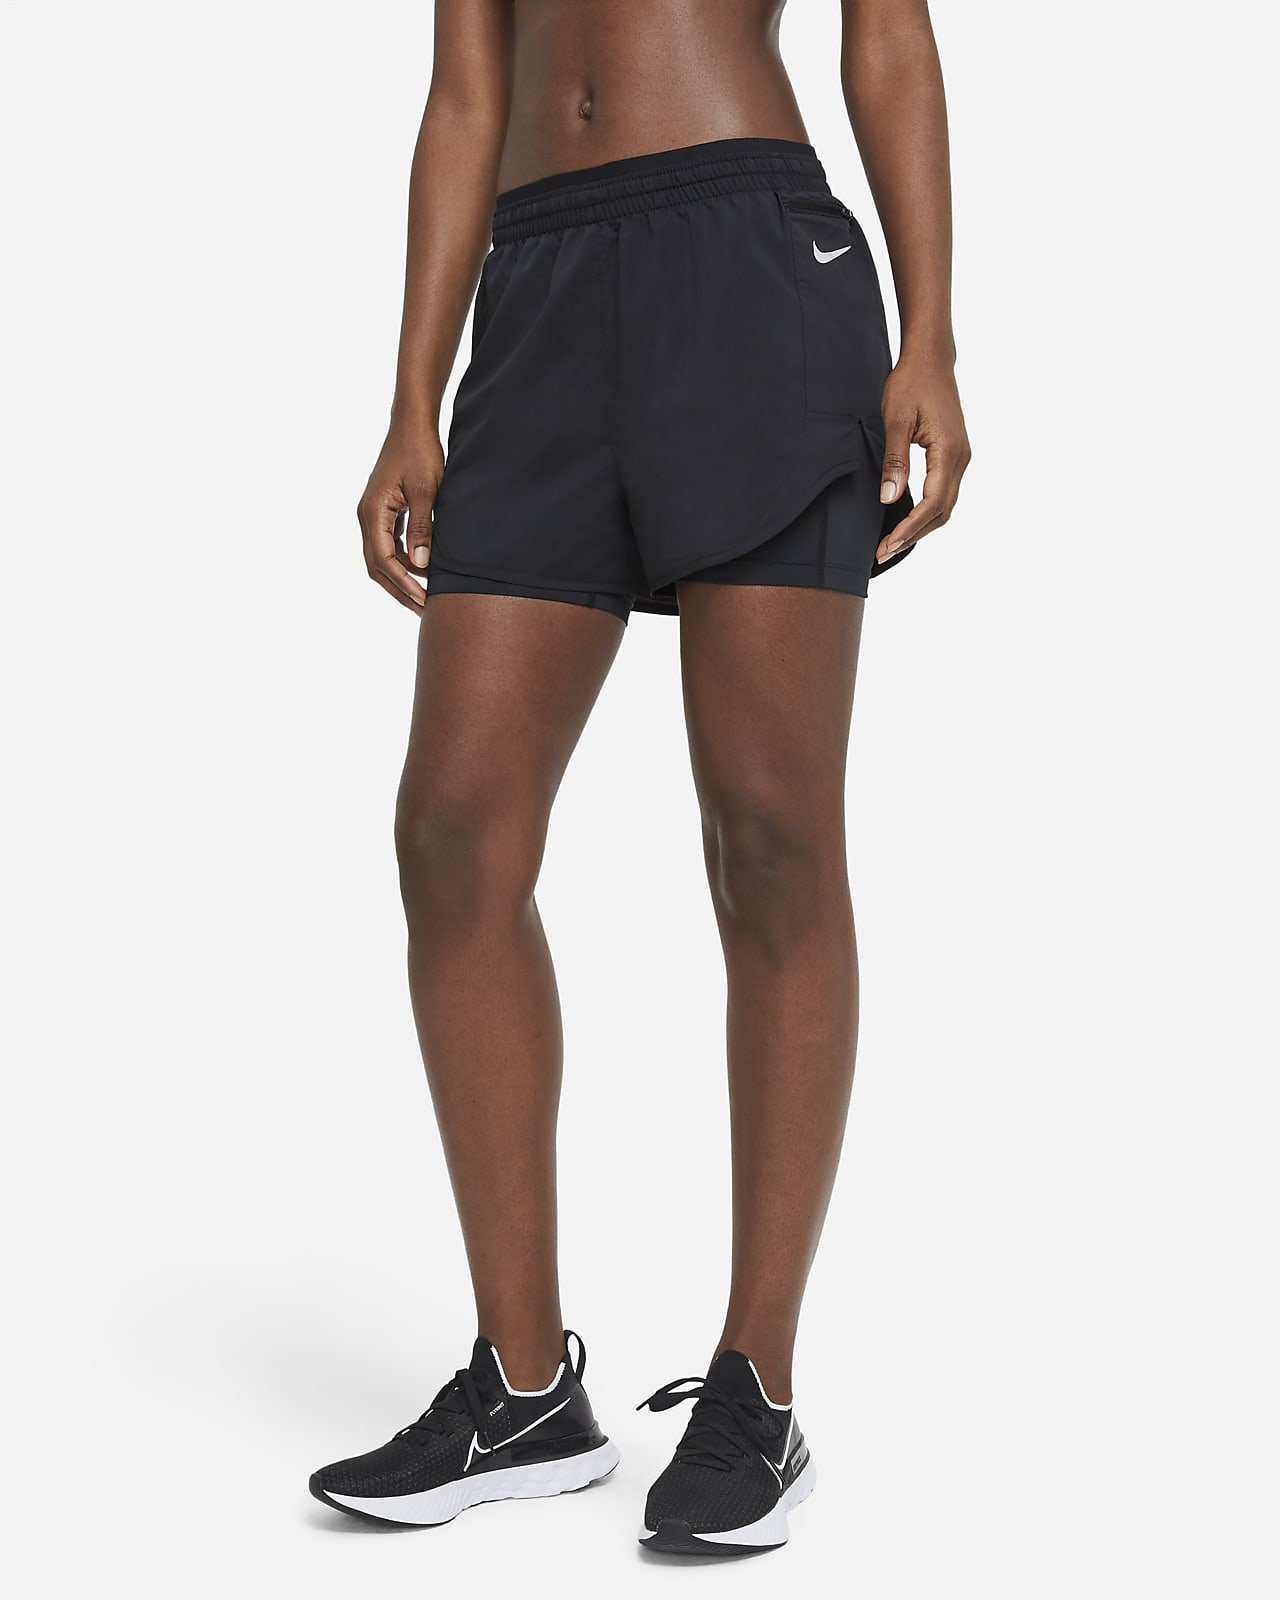 Γυναικείο σορτς για τρέξιμο 2 σε 1 Nike Tempo Luxe